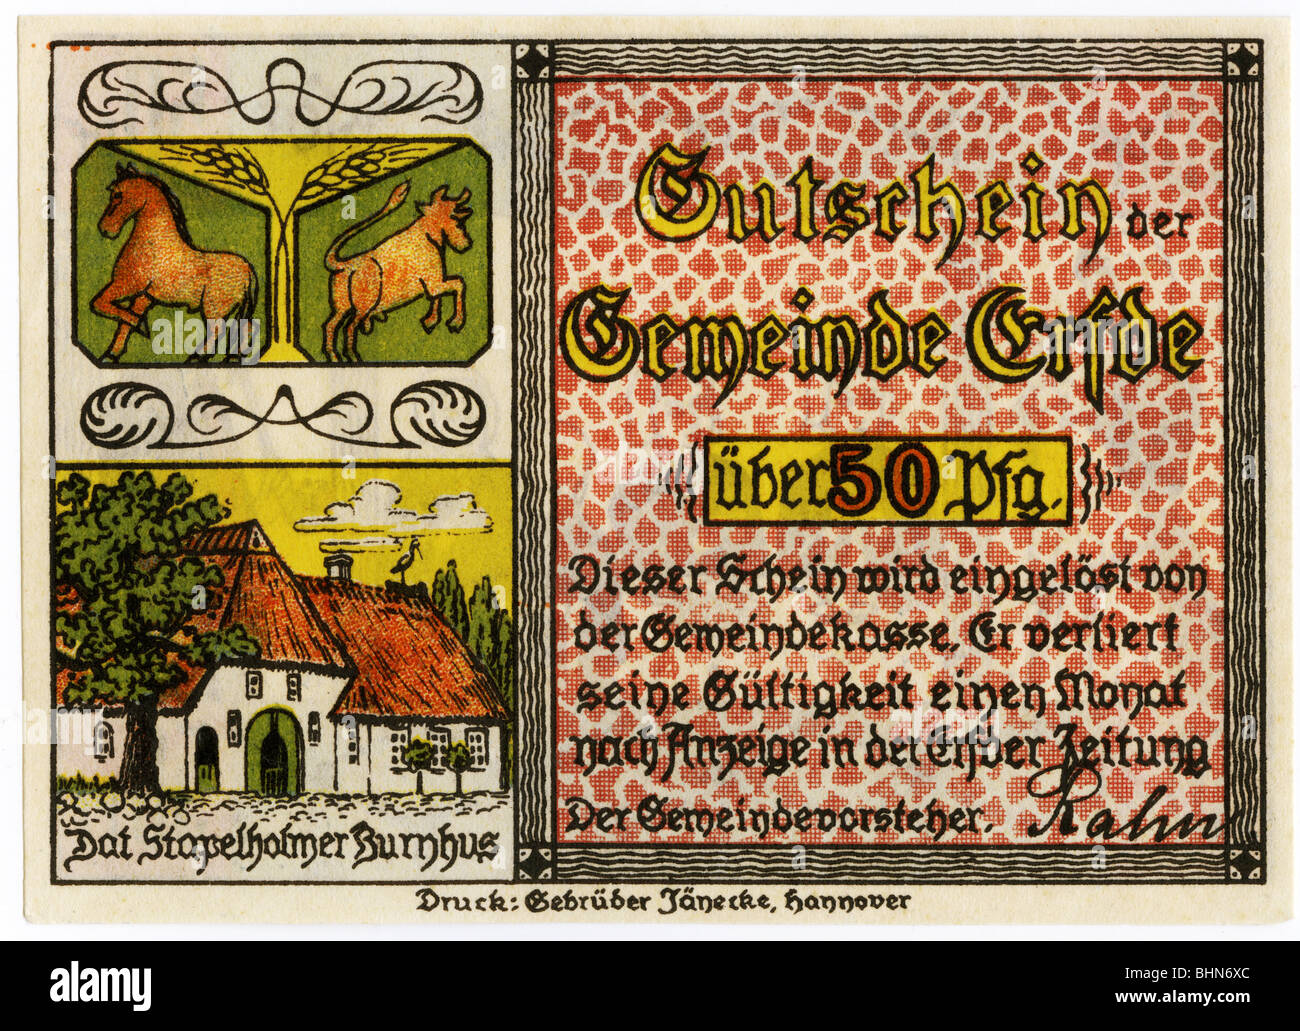 Geld / Finanzen, Banknoten, Deutschland, 50 Pfennig, Notgeld, Token, Erfde-Gemeinschaft, ca. 1920, Stockfoto